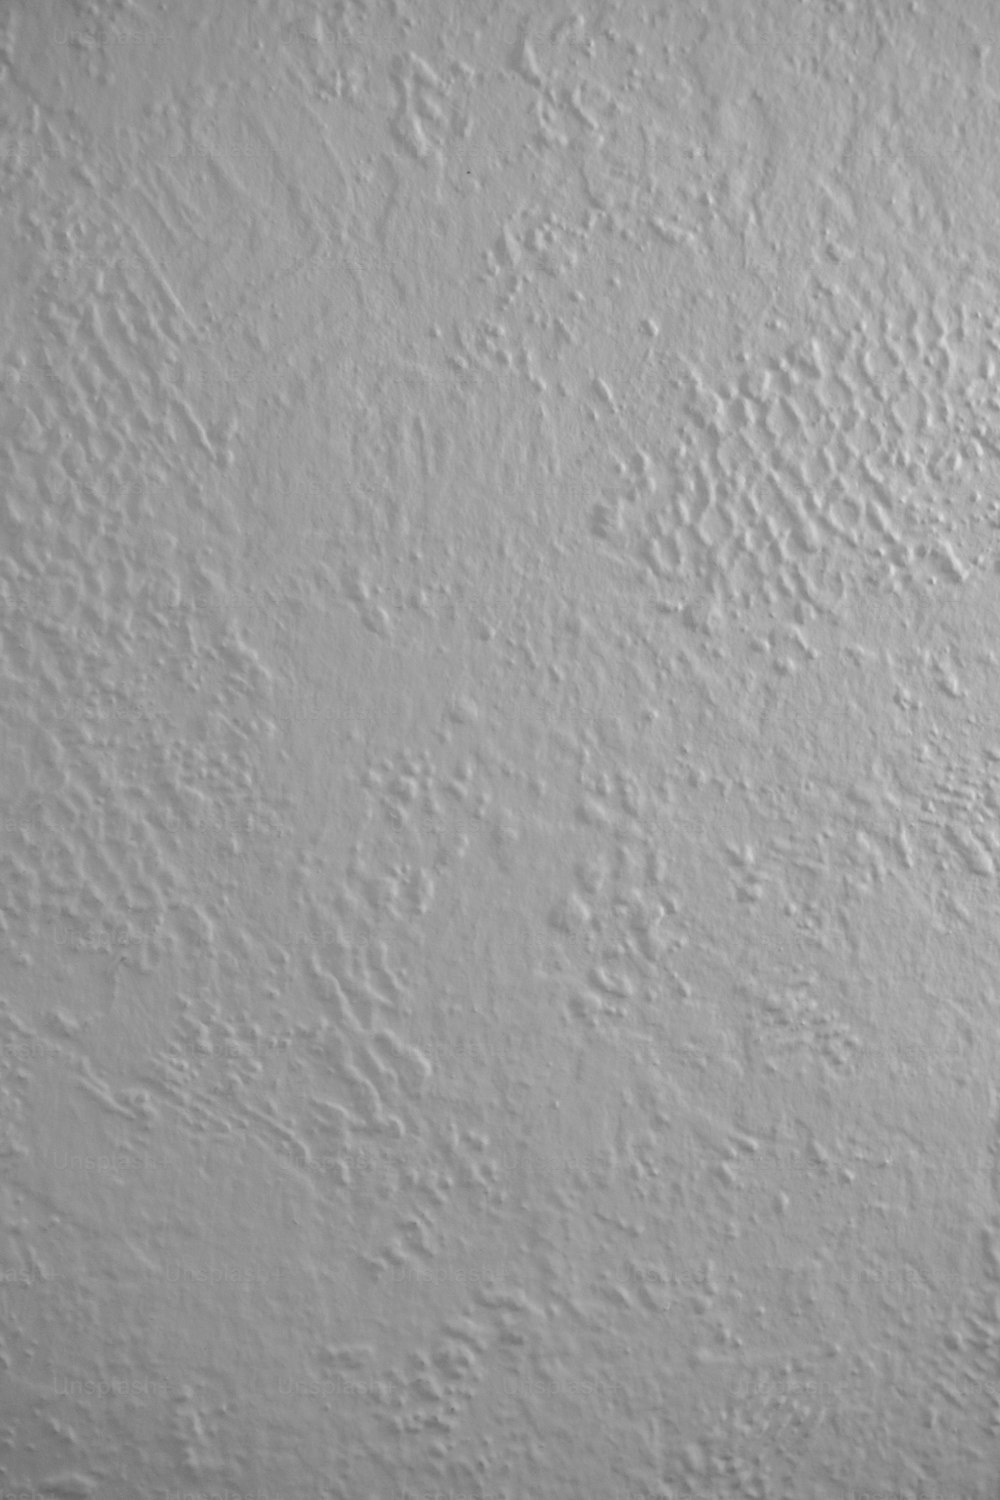 Una foto en blanco y negro de una pared blanca